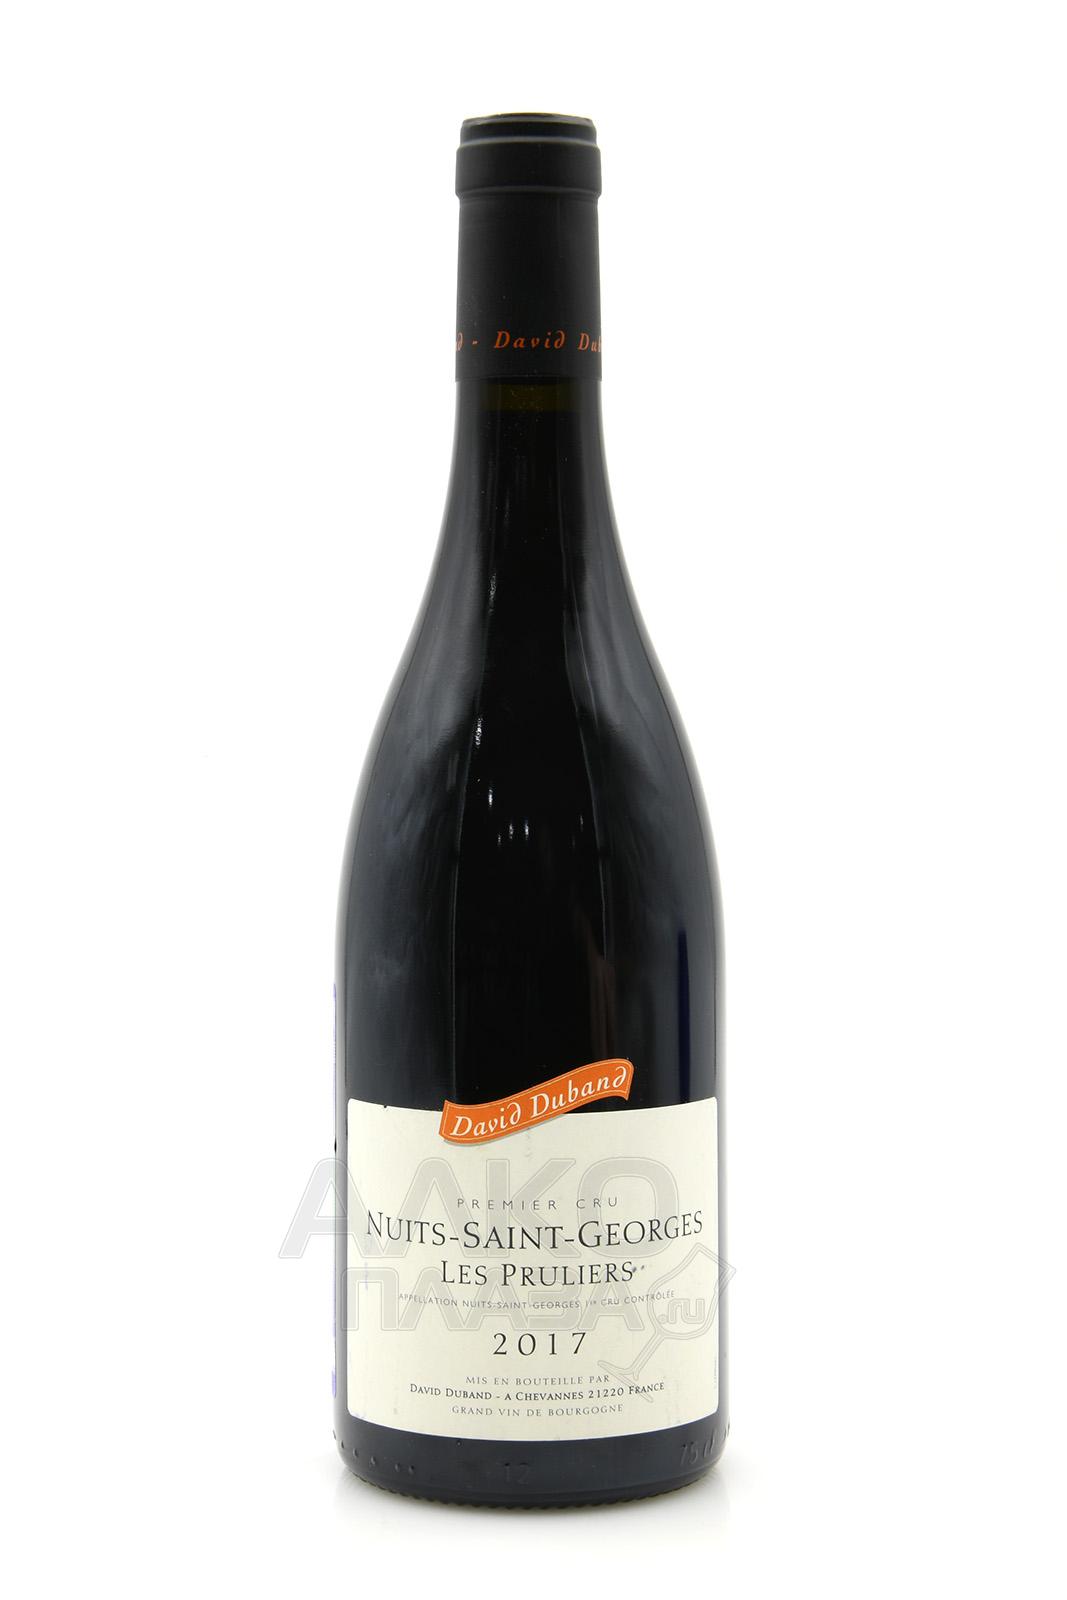 David Duband Nuits-Saint-Georges Premier Cru Les Pruliers AOC 0.75l Французское вино Давид Дюбан Нюи-Сен-Жорж Премье Крю Ле Прюлье 0.75 л.